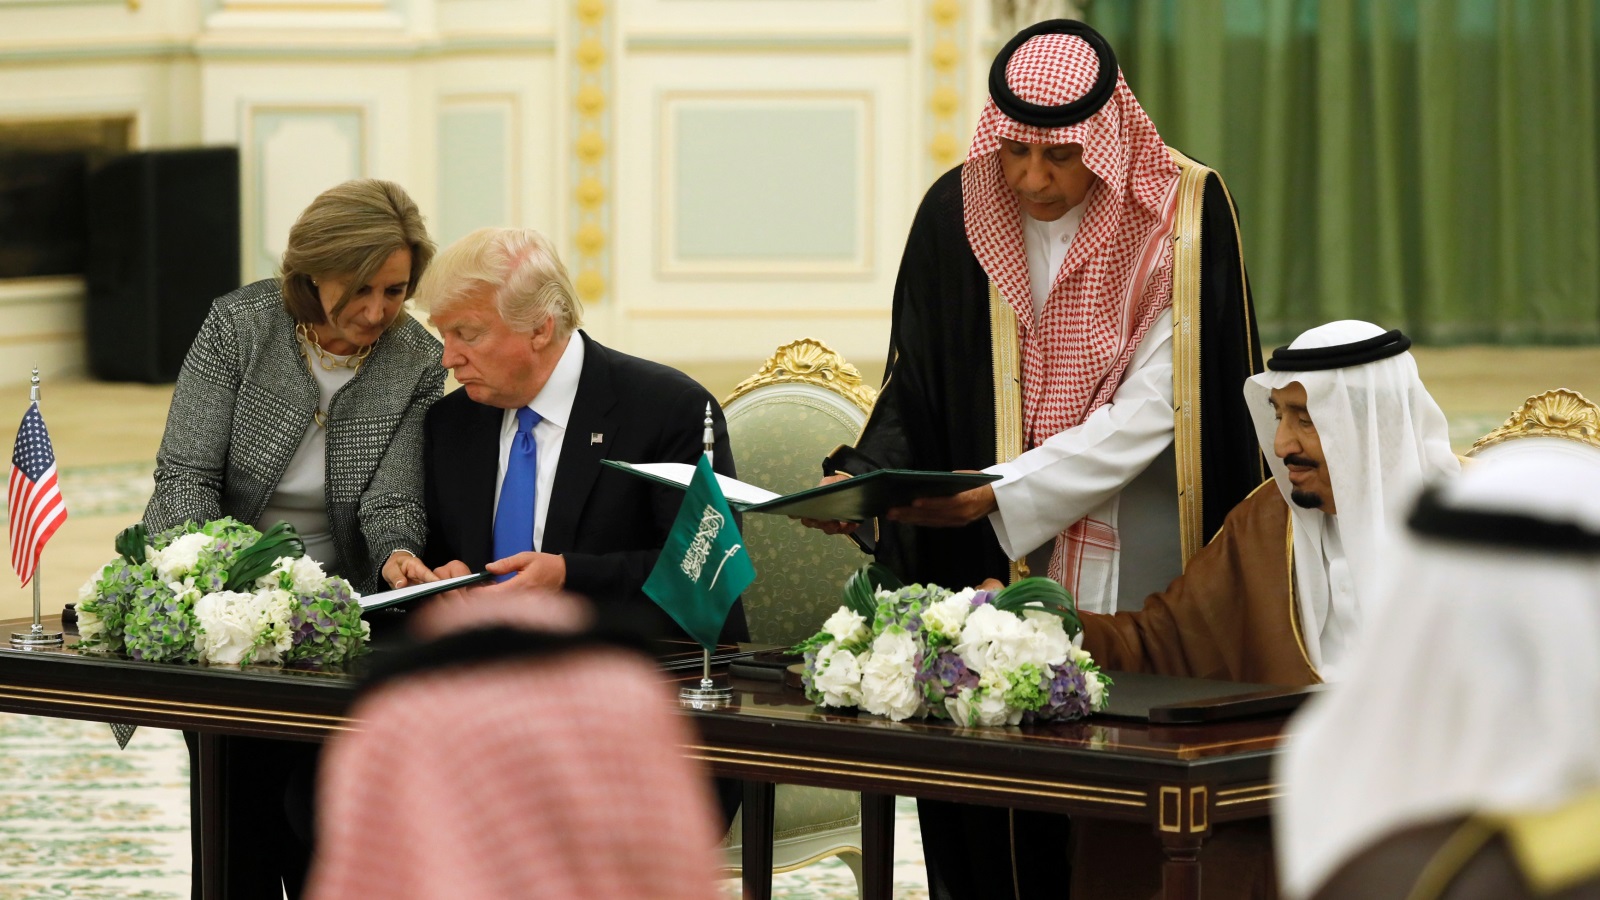 الملك سلمان بن عبدالعزيز وترمب أثناء توقيعهما الاتفاقيات الأمنية (رويترز)